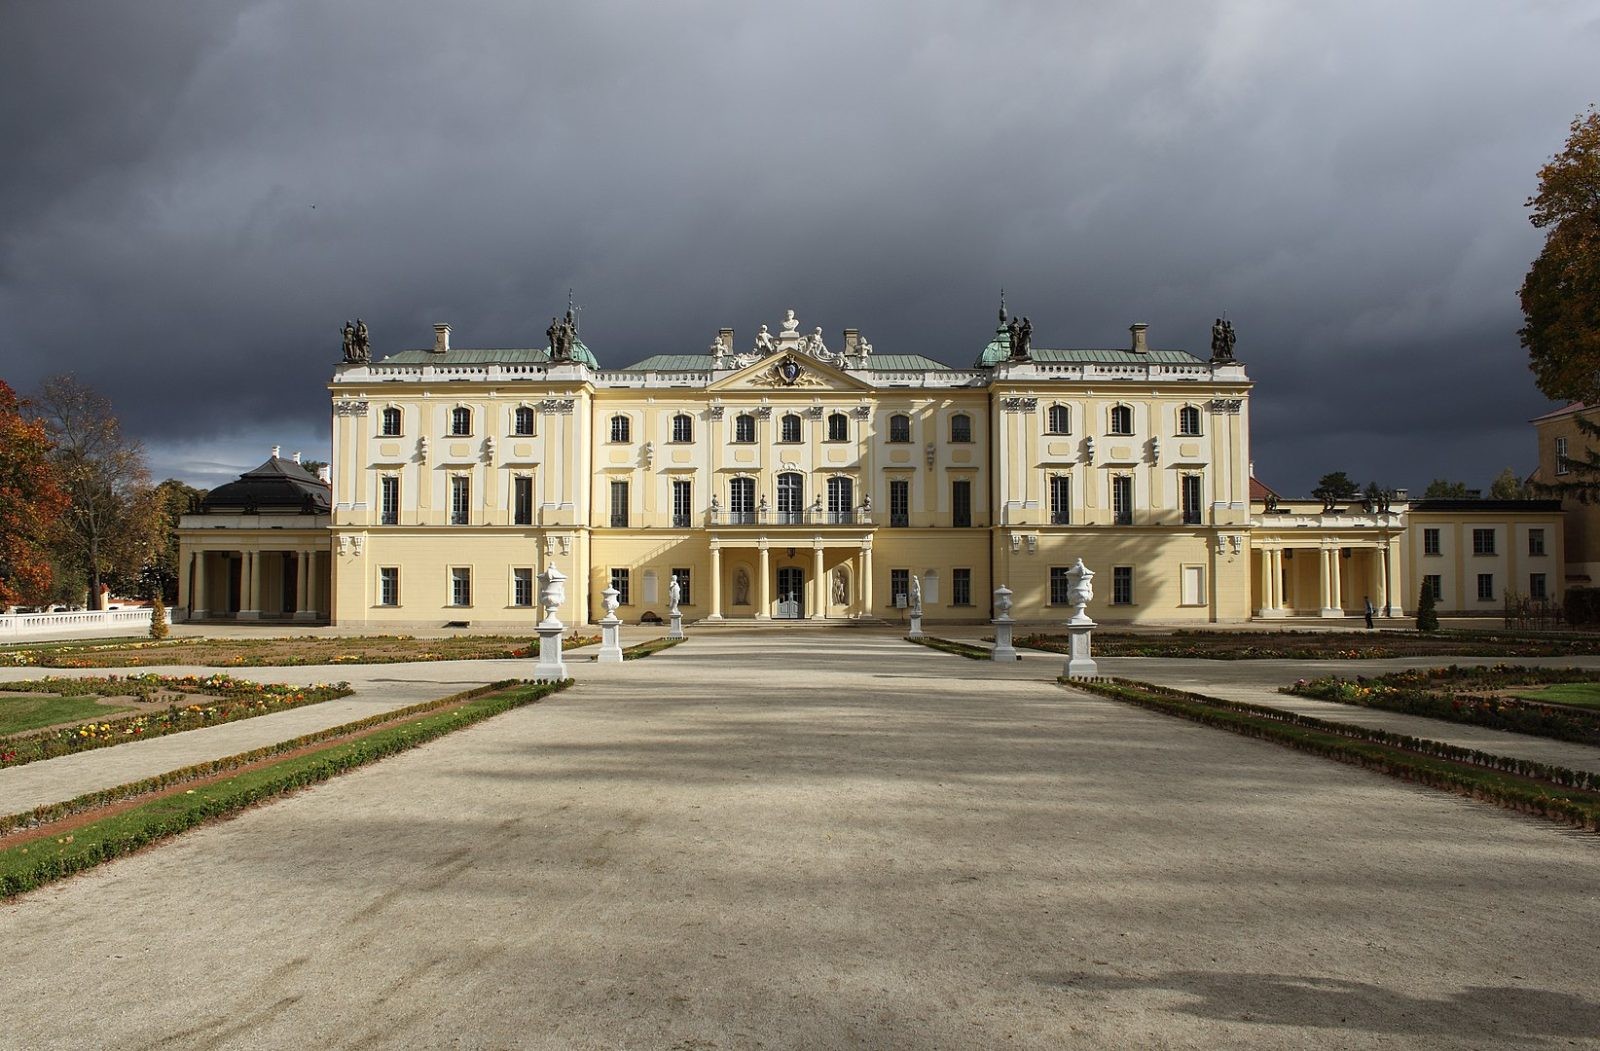 Tysiące skarbów pod słynnym pałacem. Polski Wersal skrywa szereg niespodzianek